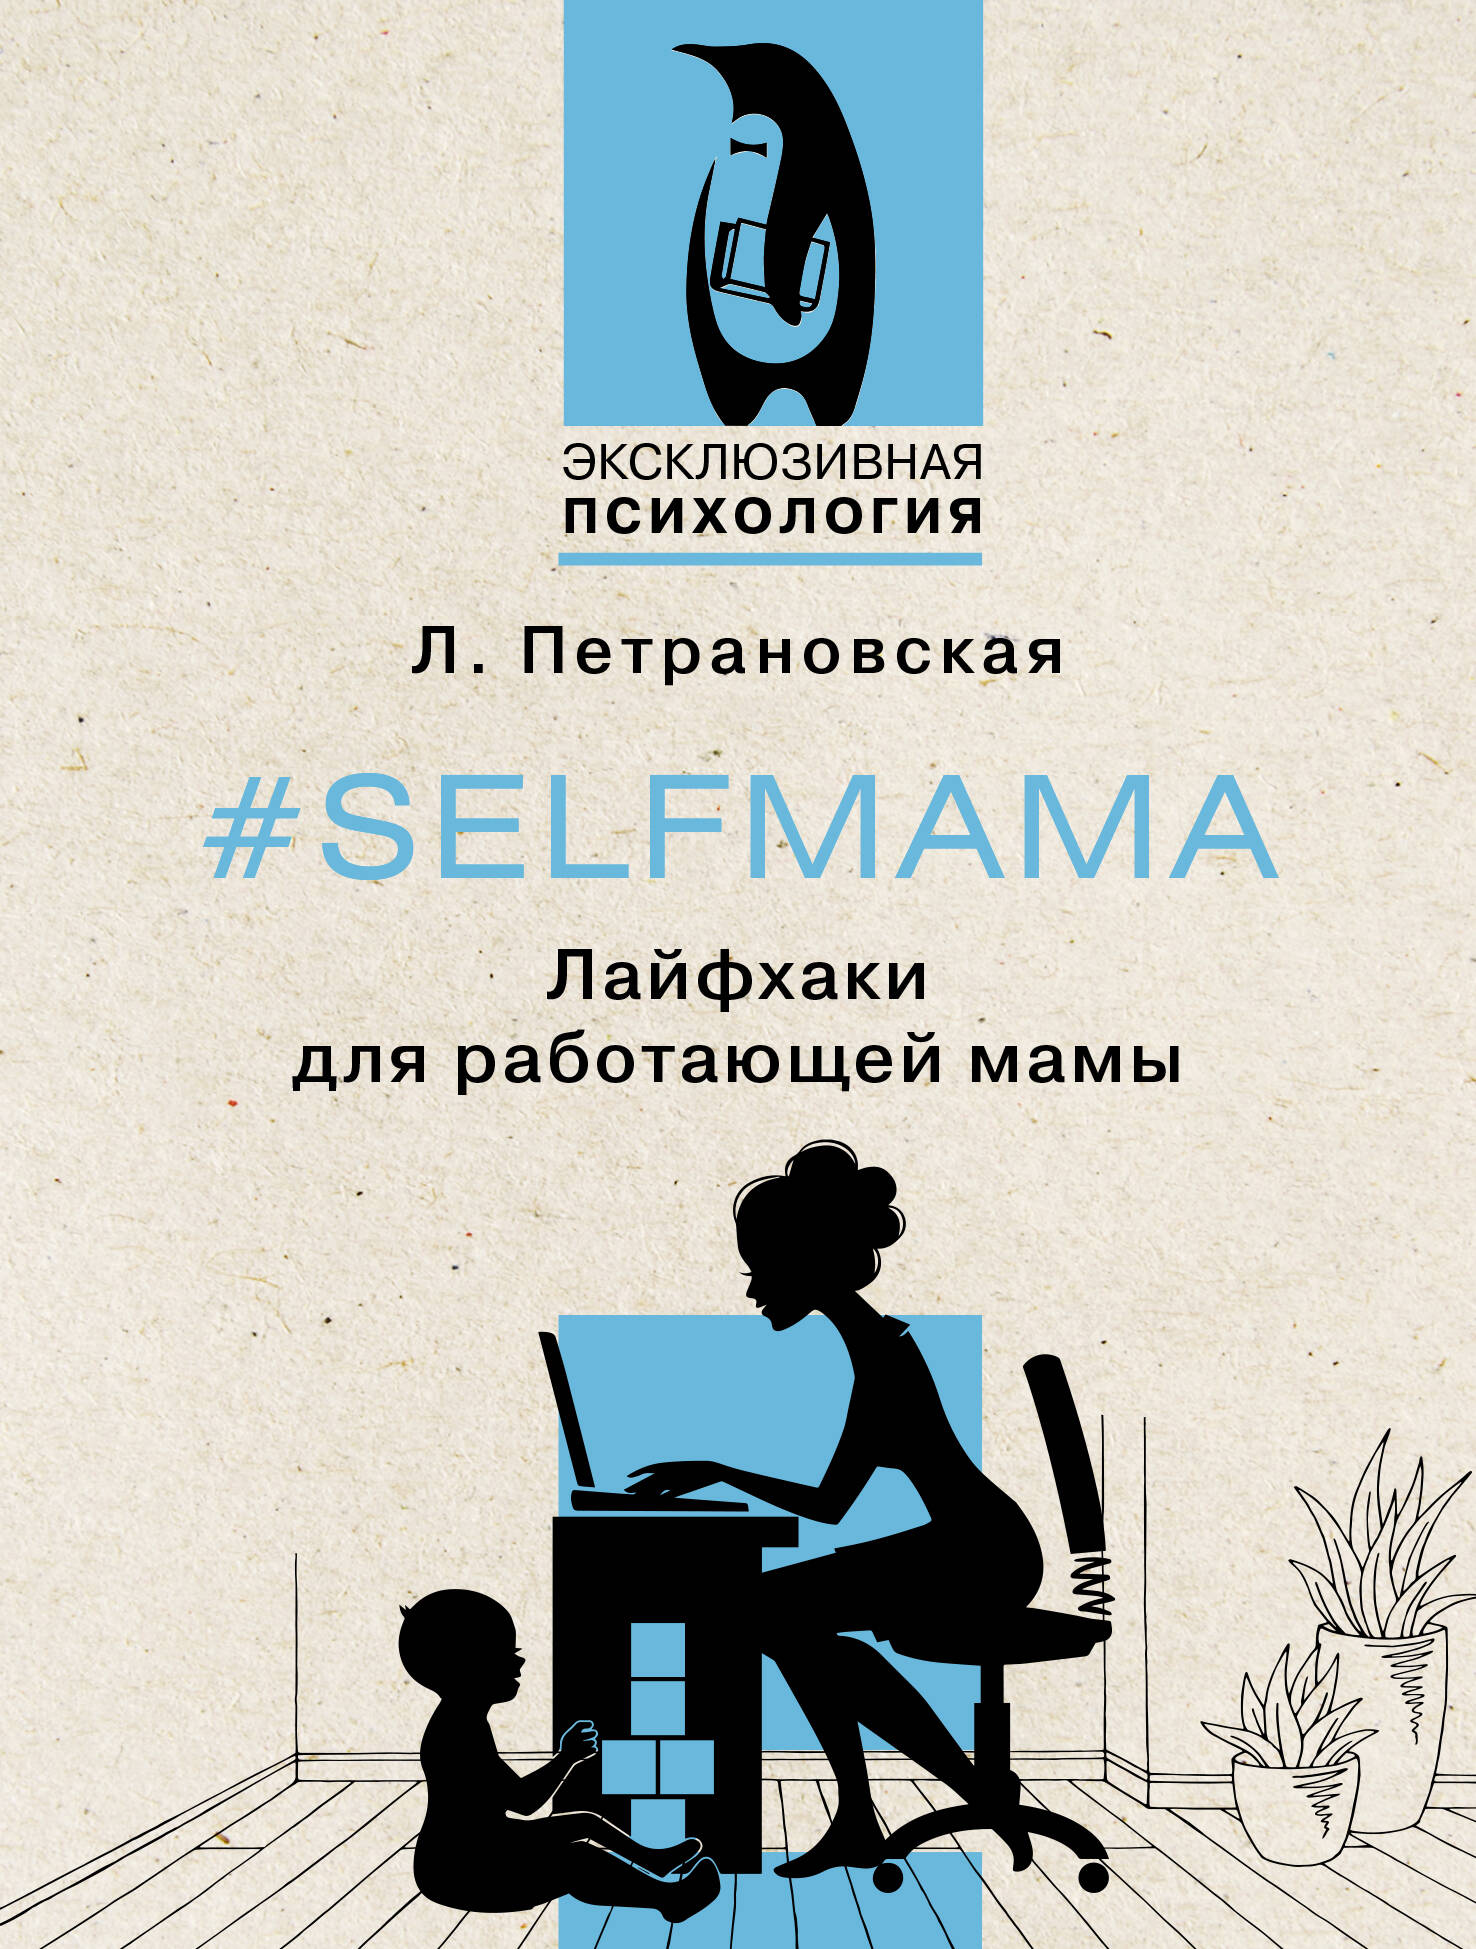 Петрановская Людмила Владимировна - #Selfmama. Лайфхаки для работающей мамы